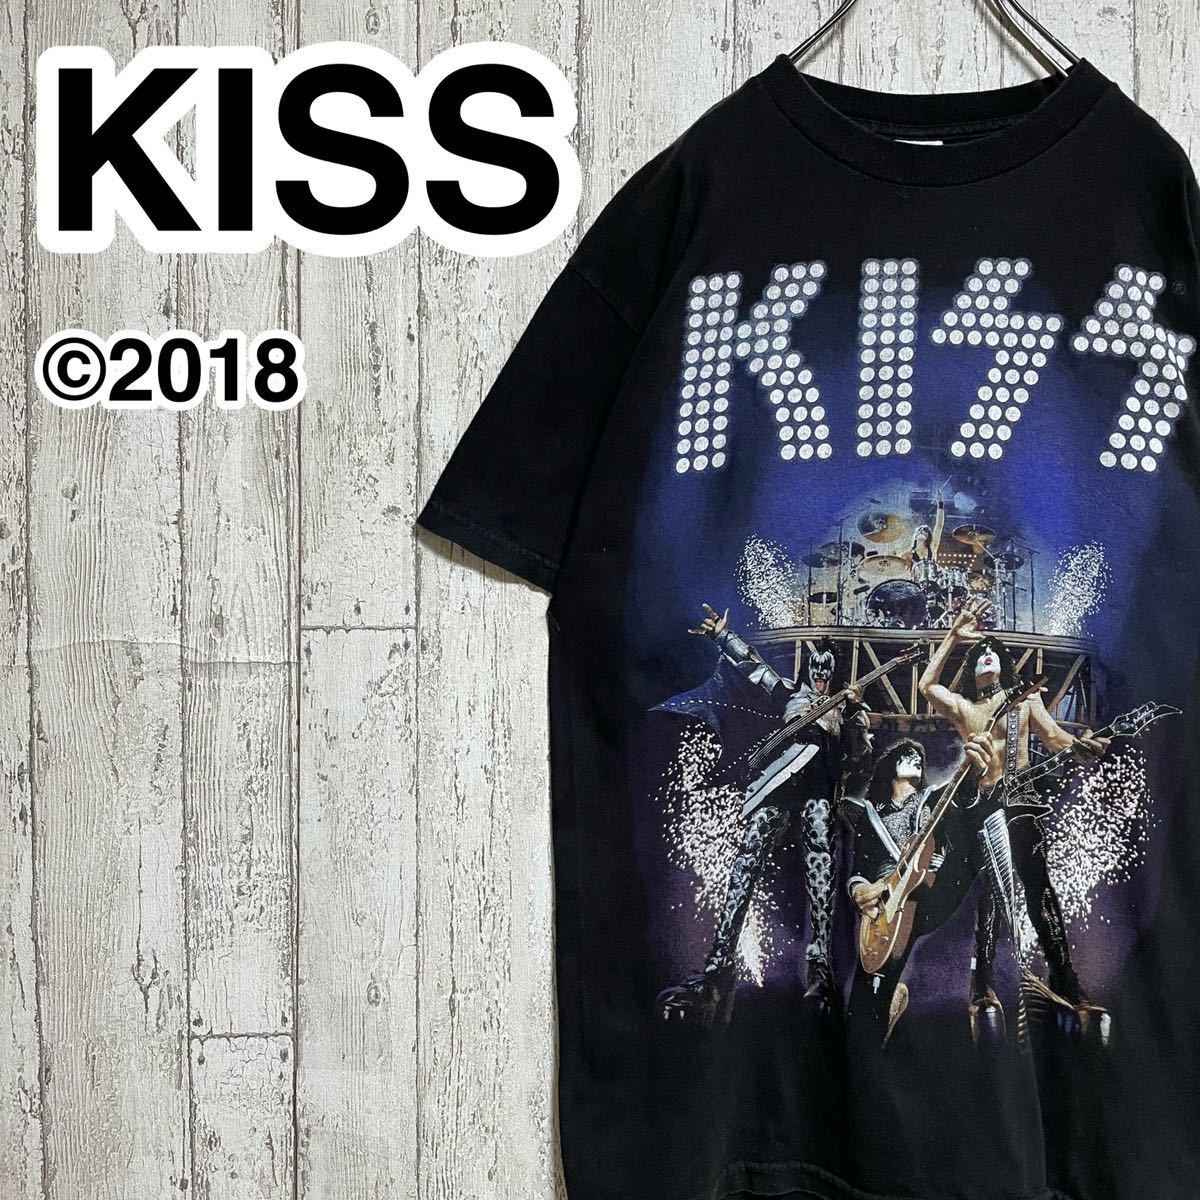 低価格の アルスタイル ALSTYLE ☆送料無料☆ KISS 22-68 メキシコ製 2018 ブラック Mサイズ バンTシャツ キッス Tシャツ